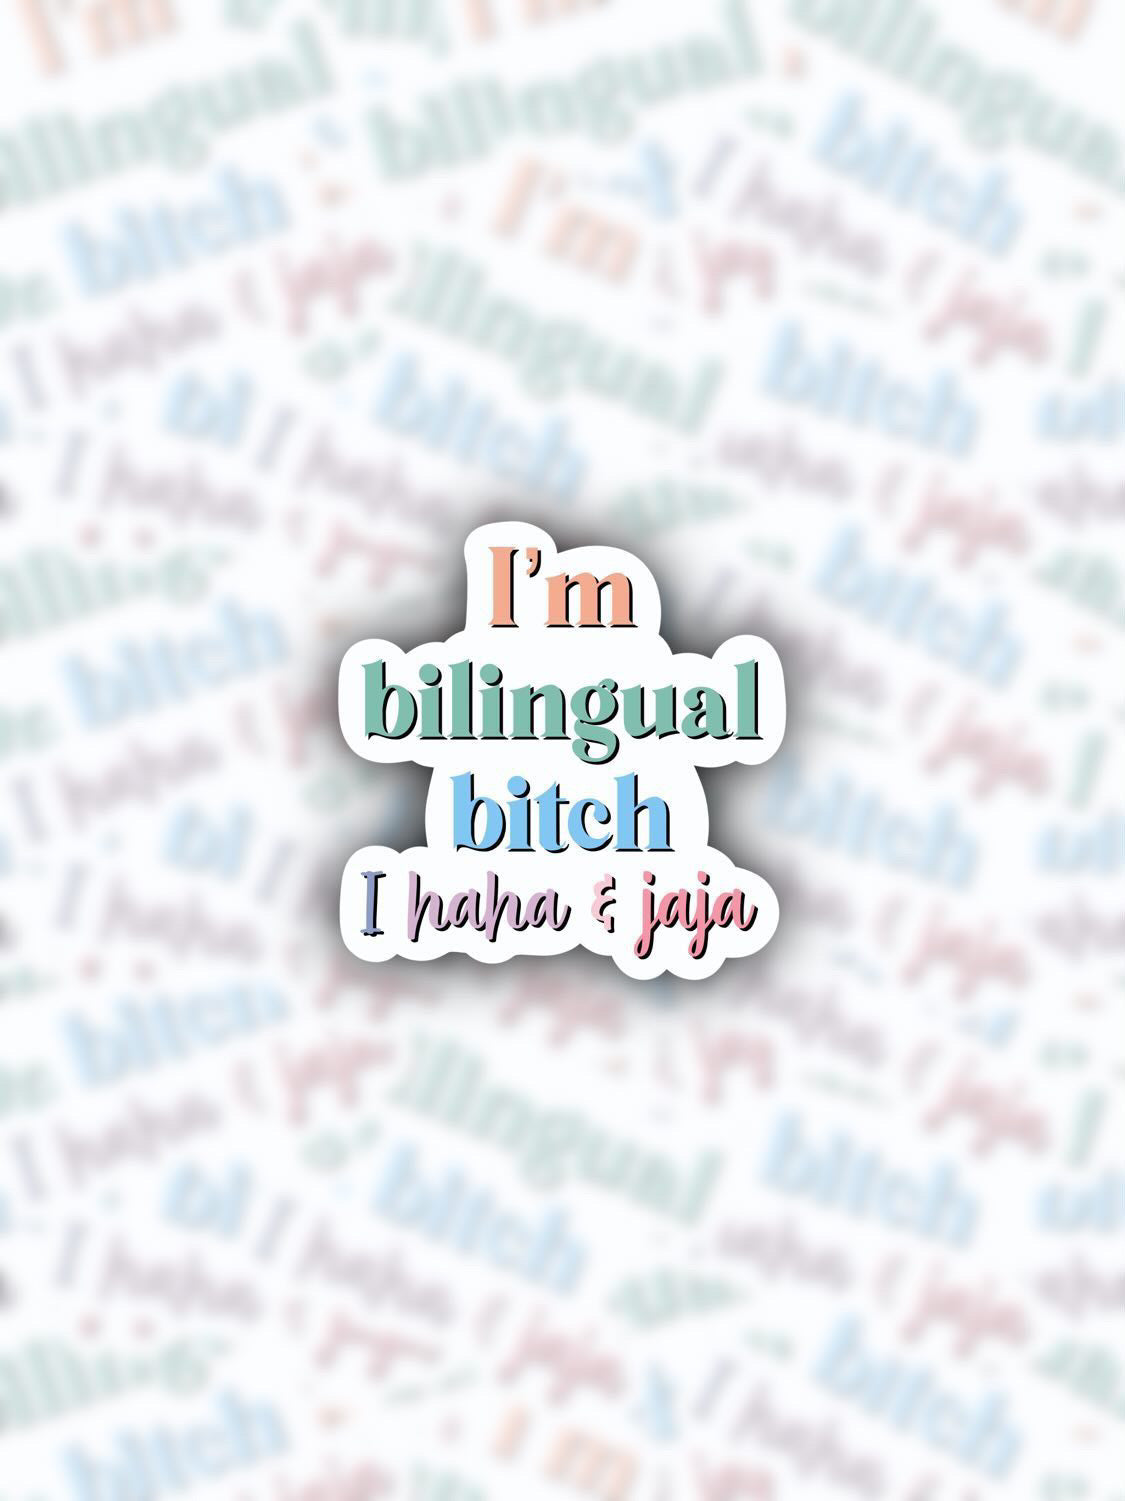 I’m Bilingual Bitch I haha and jaja Sticker